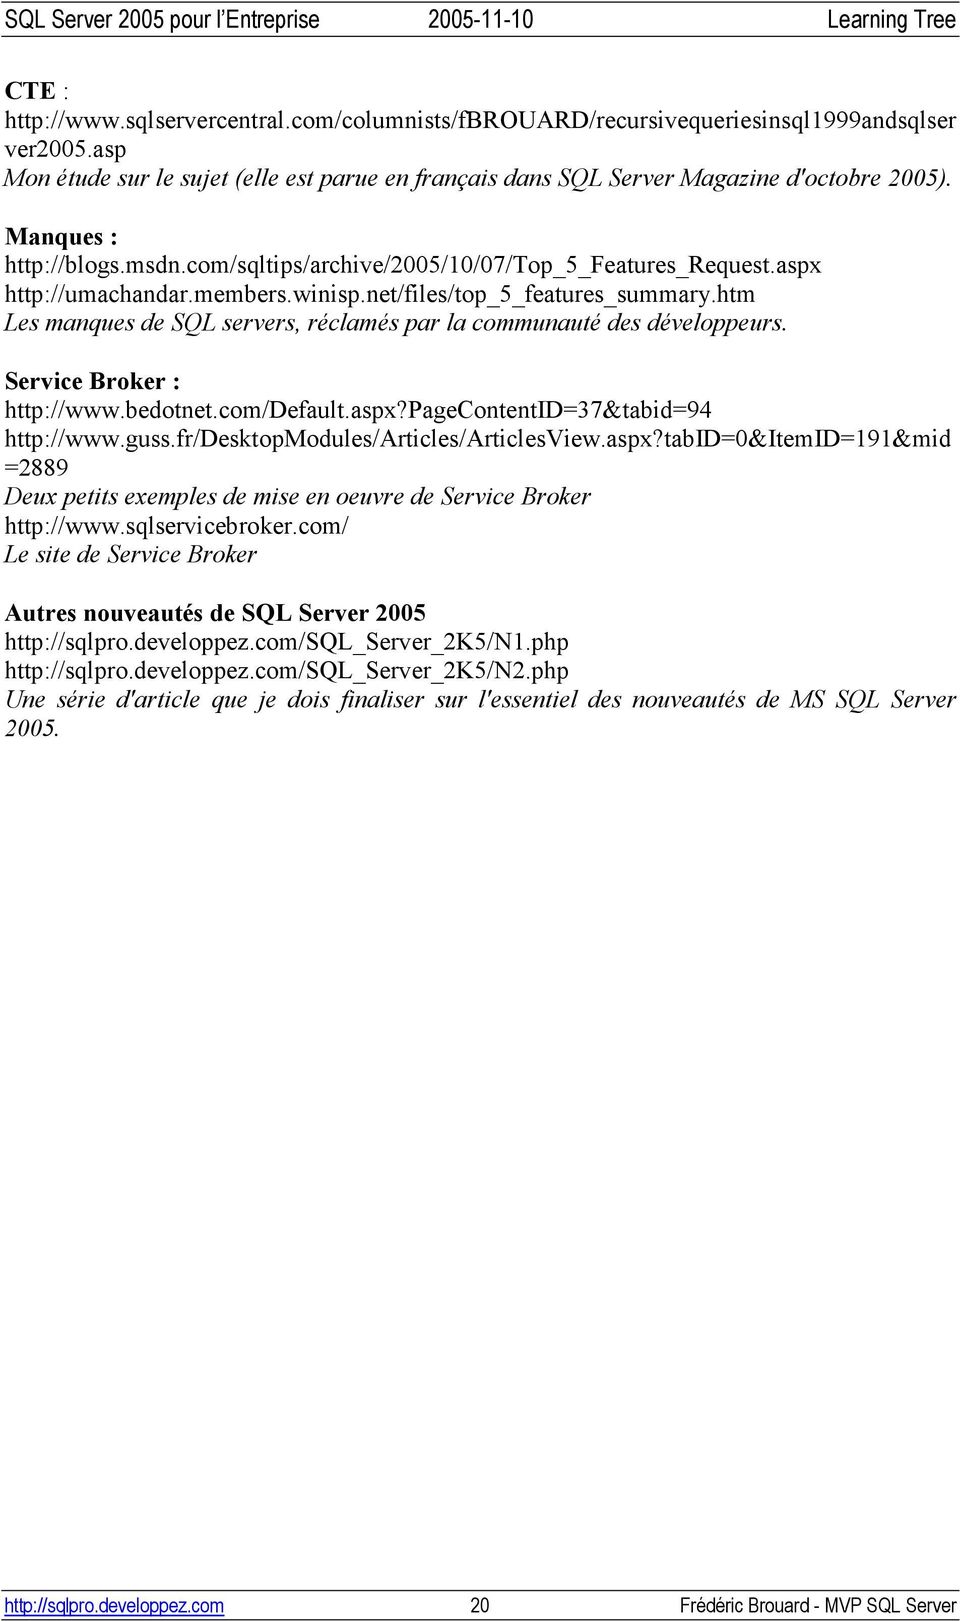 htm Les manques de SQL servers, réclamés par la communauté des développeurs. Service Broker : http://www.bedotnet.com/default.aspx?pagecontentid=37&tabid=94 http://www.guss.